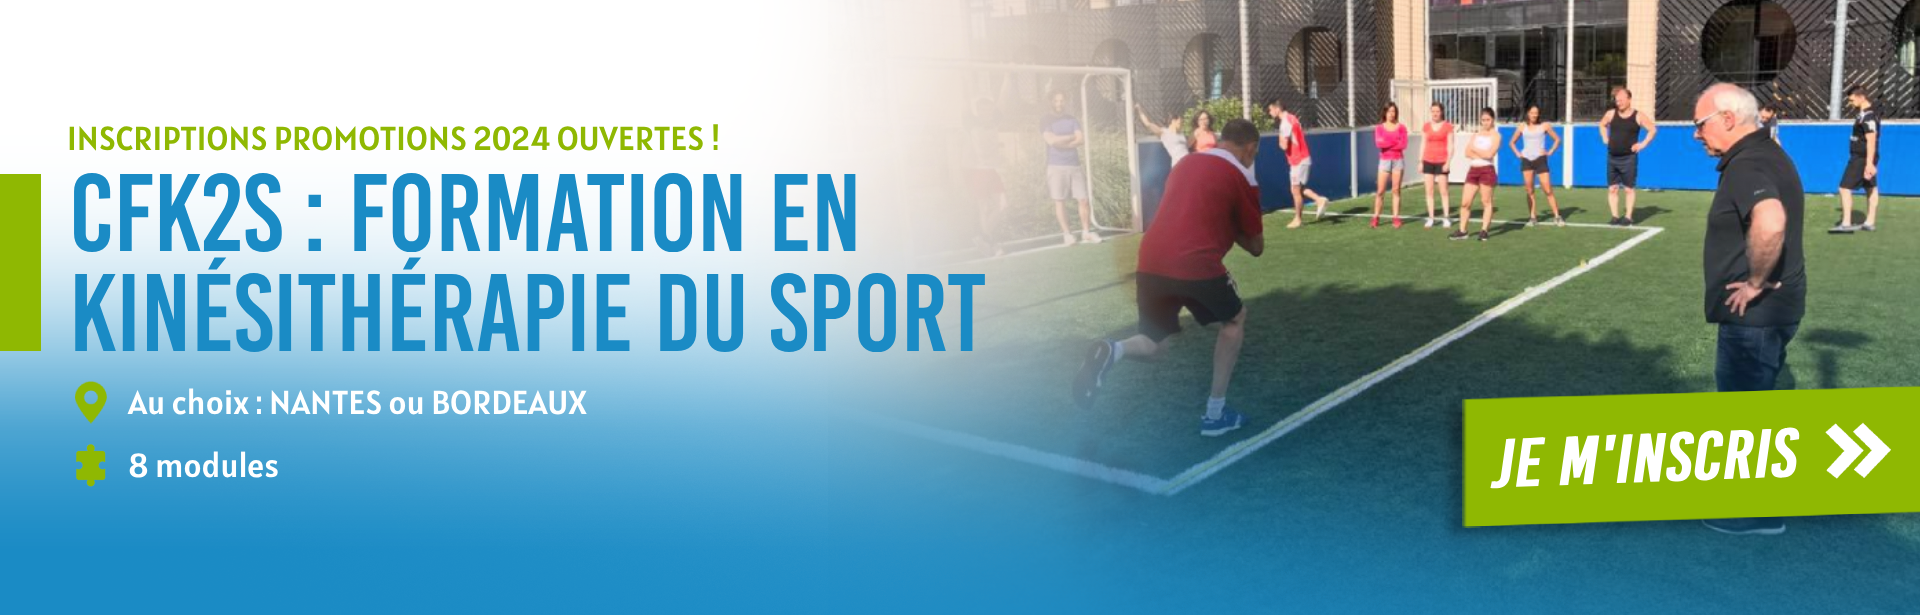 CEVAK - Formation kiné du sport Nantes Bordeaux